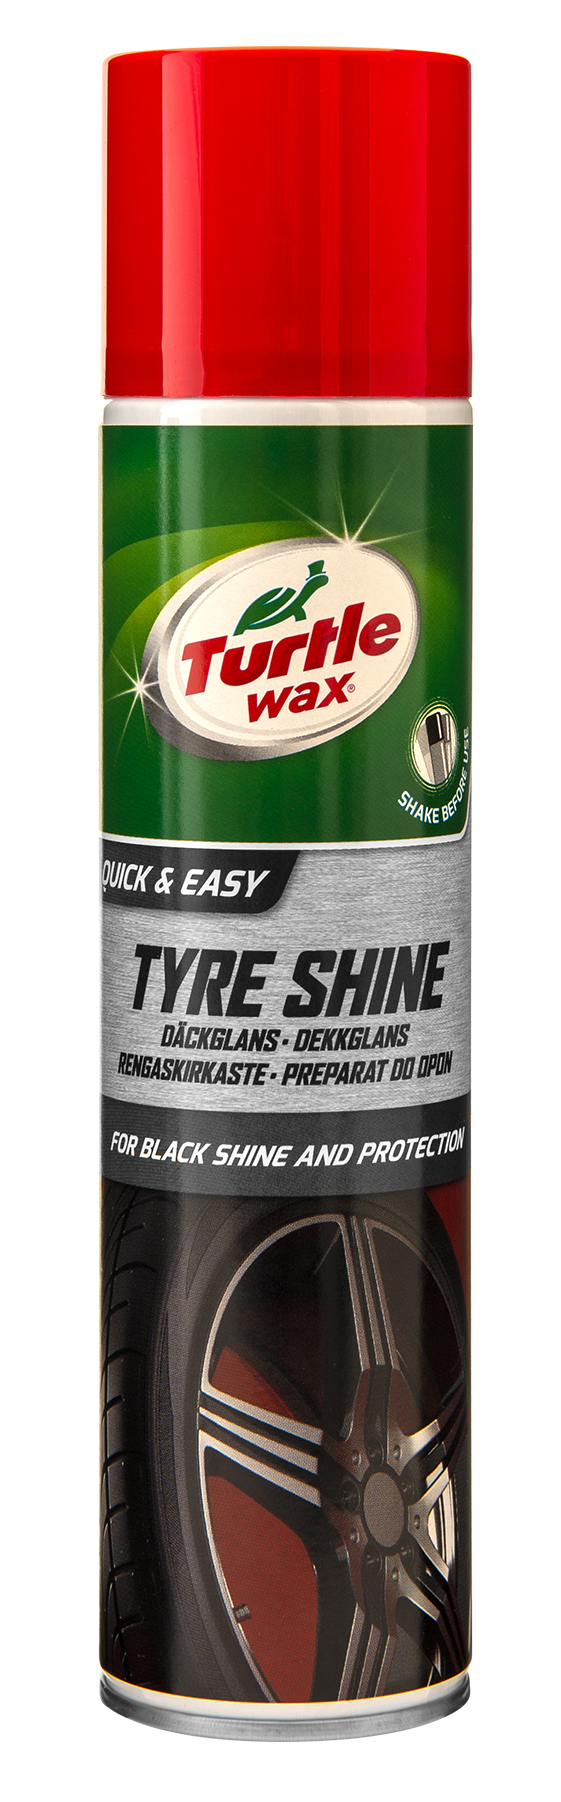 Däckglans Tyre Shine spray 300 ml